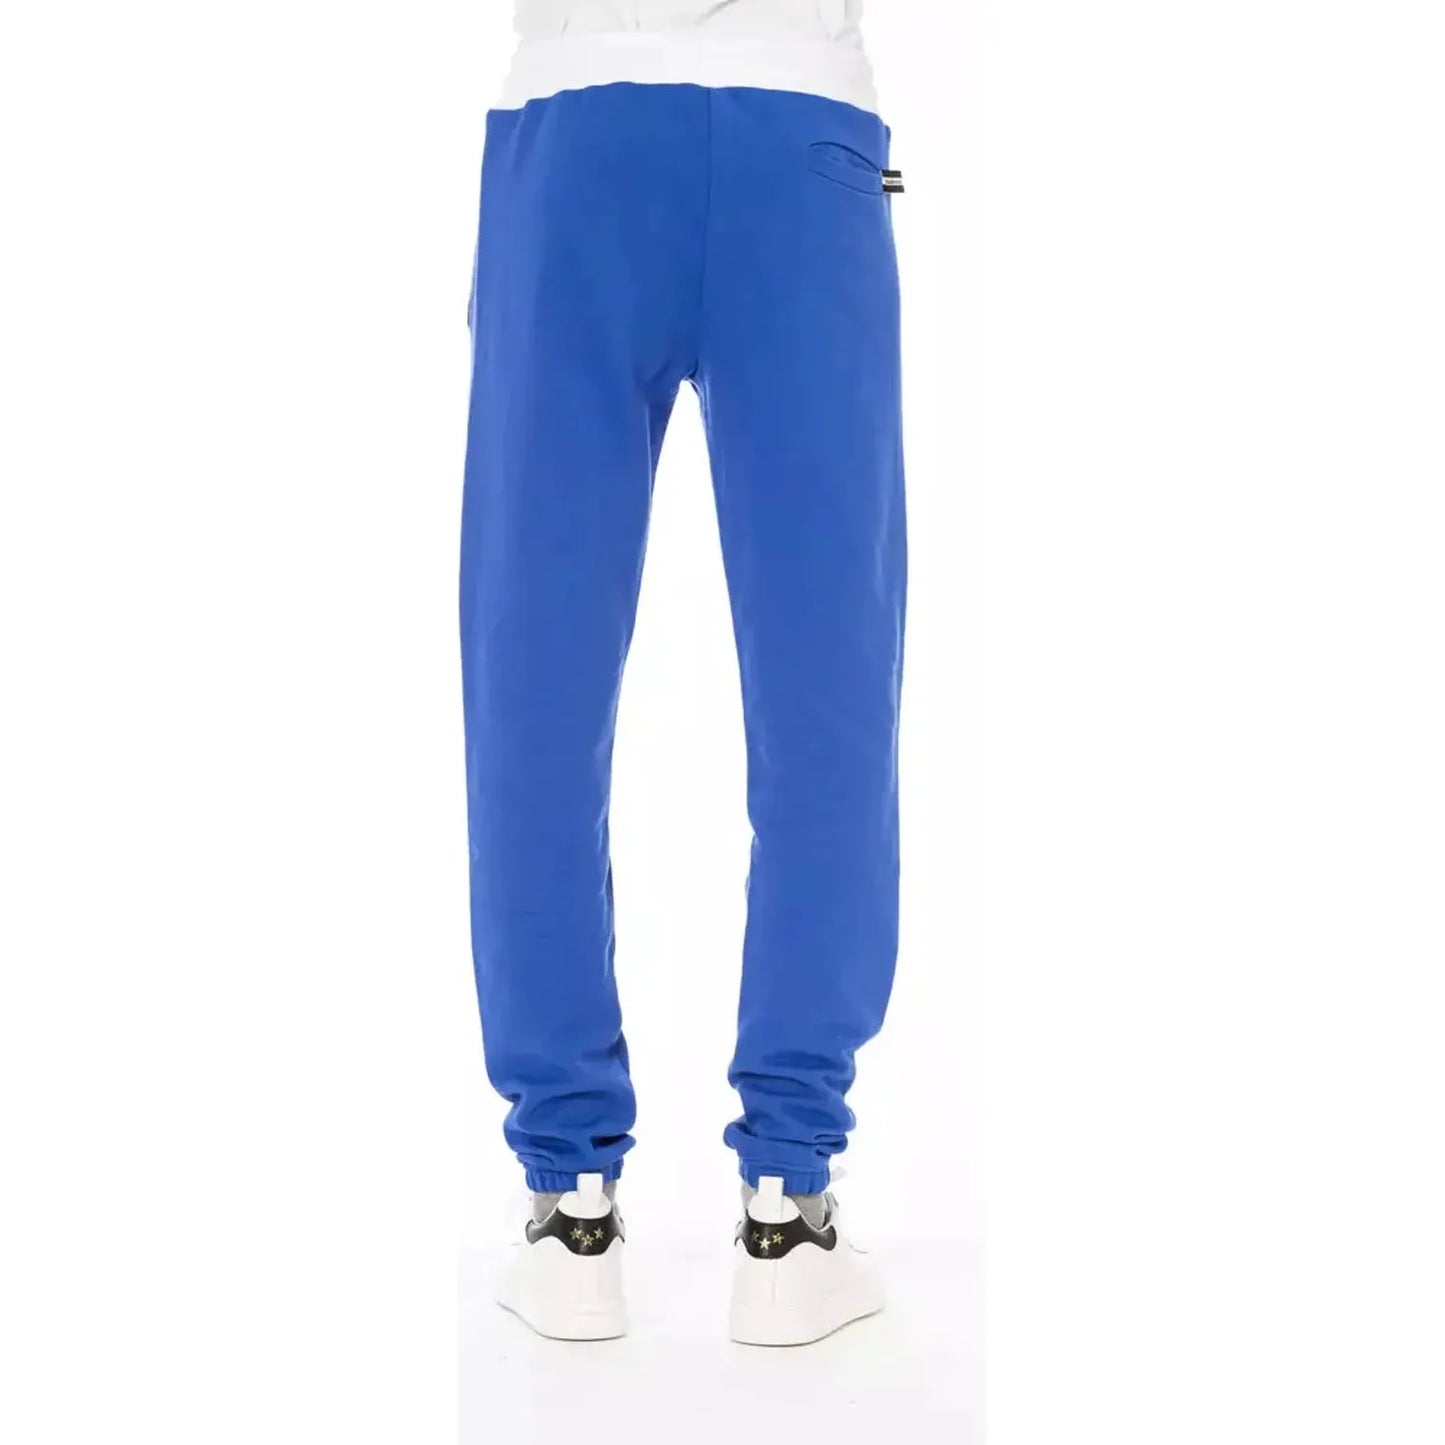 Baldinini Trend Chic Blue Cotton Sport Pants with Lace Closure blue-cotton-jeans-pant-43